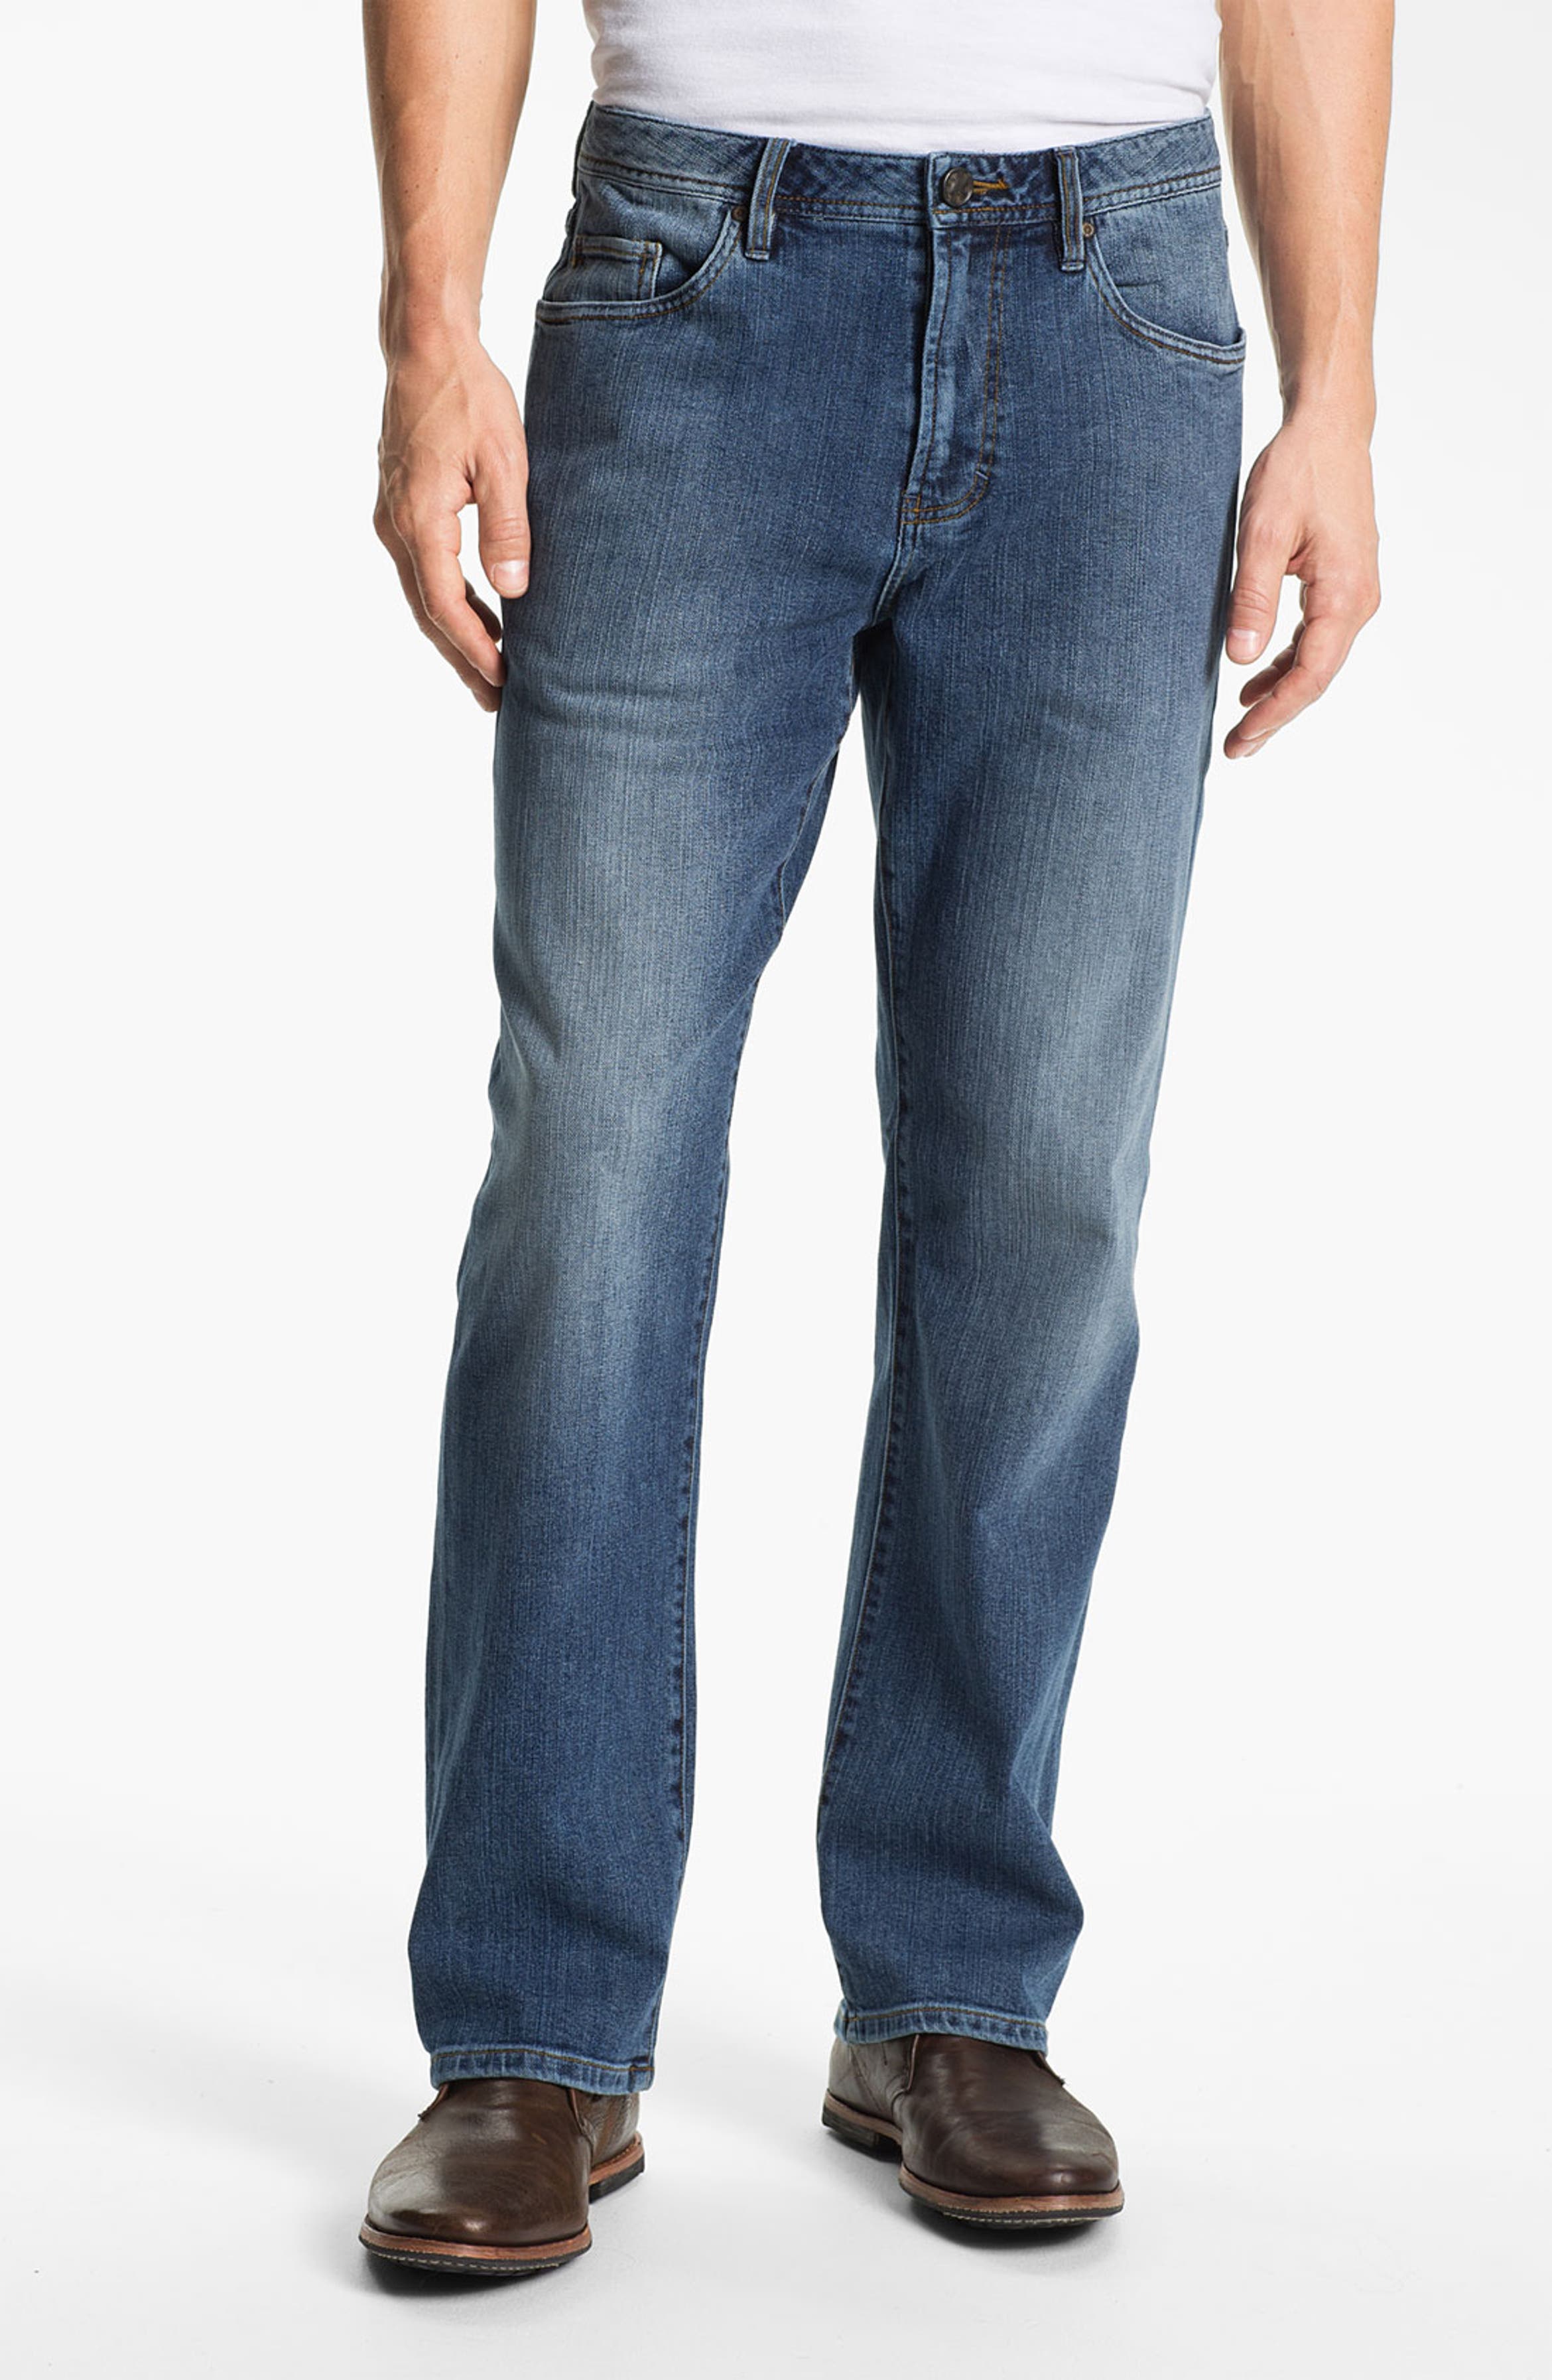 Worn Jeans 'Octane' Straight Leg Jeans (Clean Dark) | Nordstrom